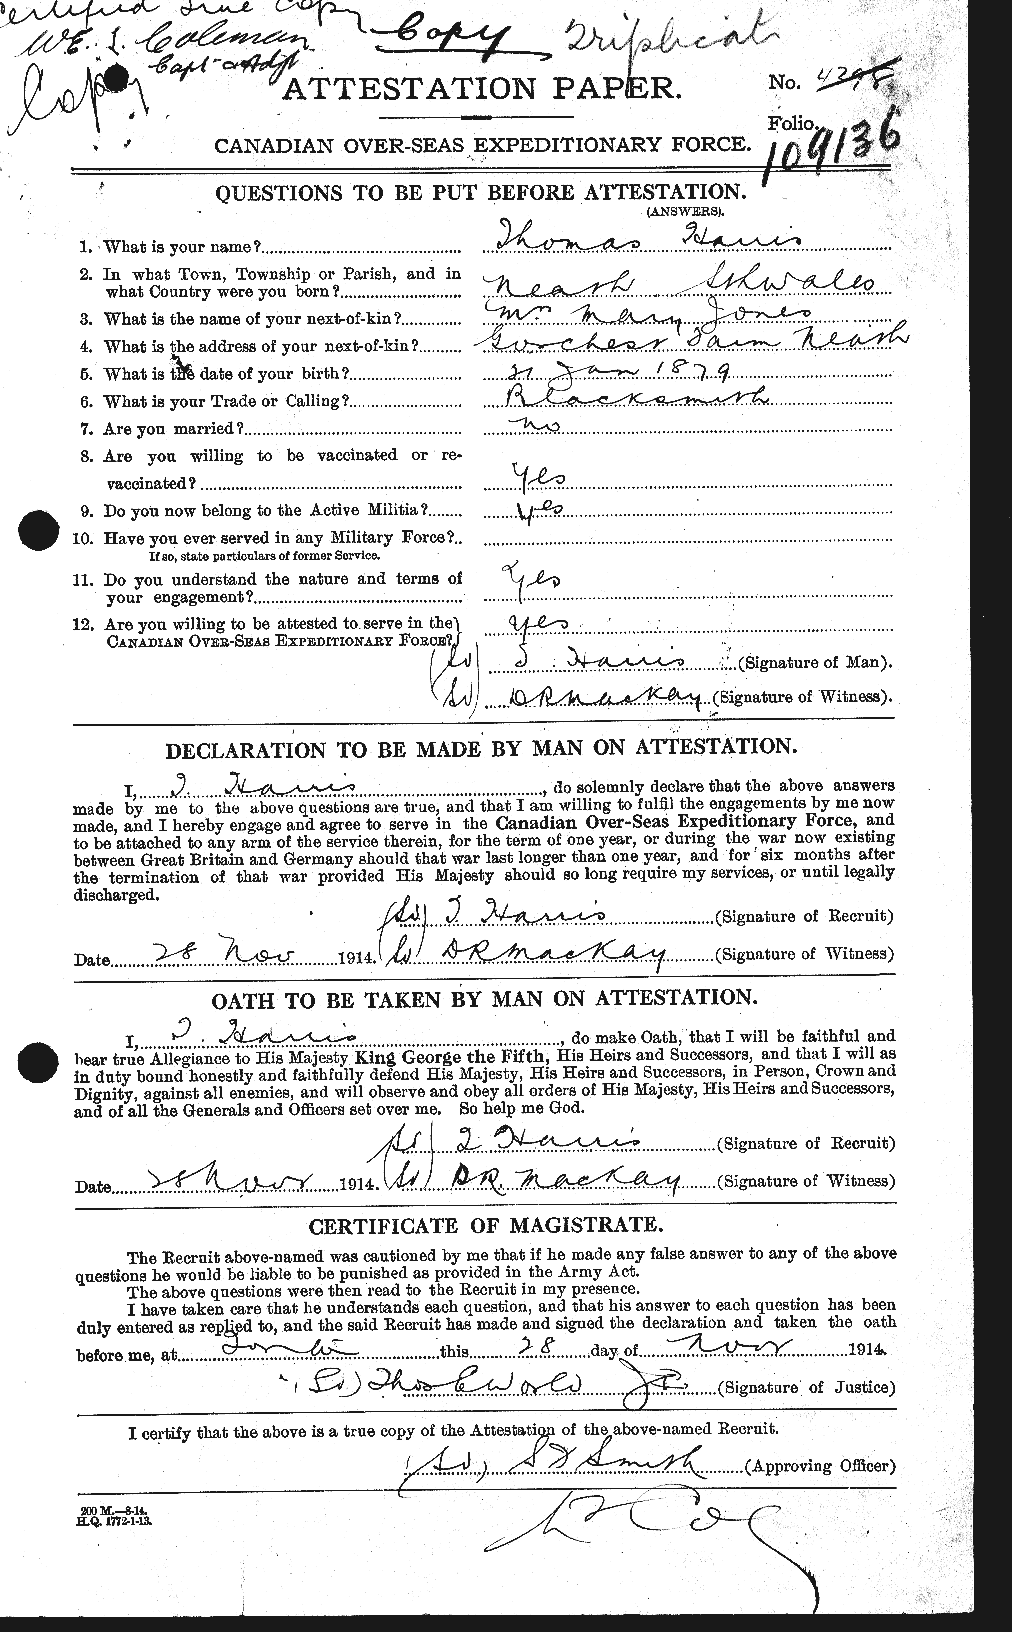 Dossiers du Personnel de la Première Guerre mondiale - CEC 378233a